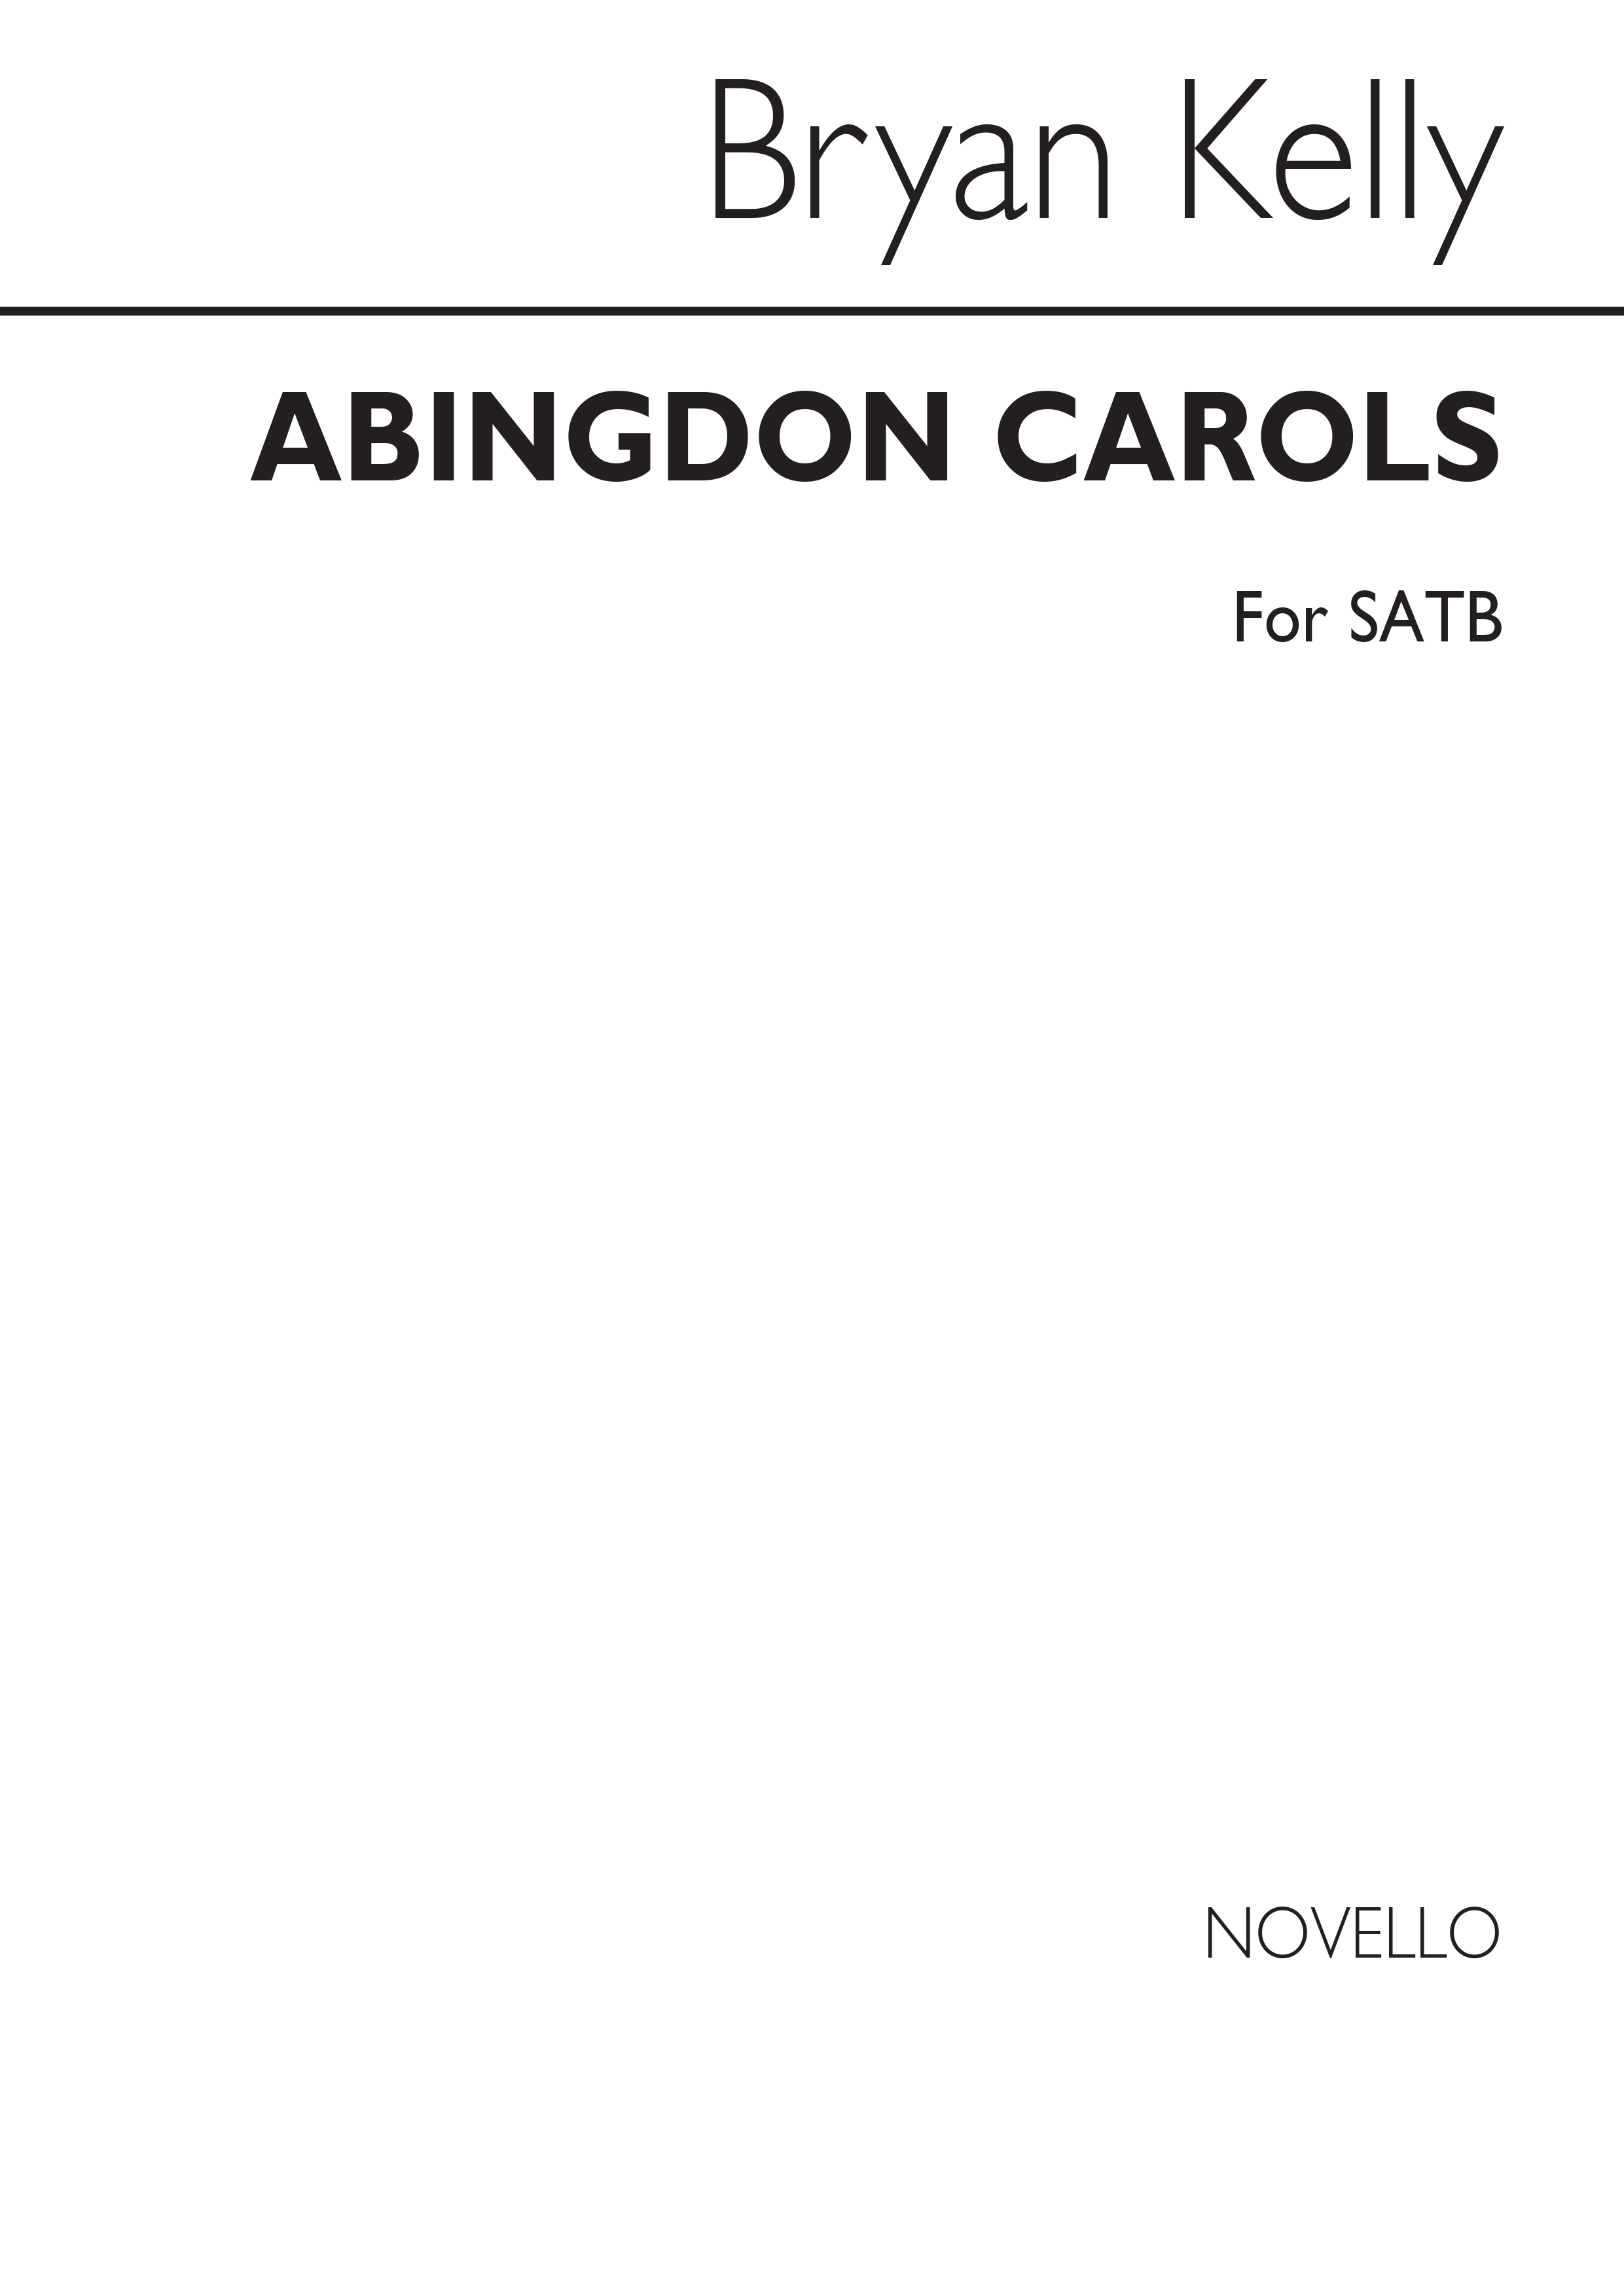 Bryan Kelly: Abingdon Carols